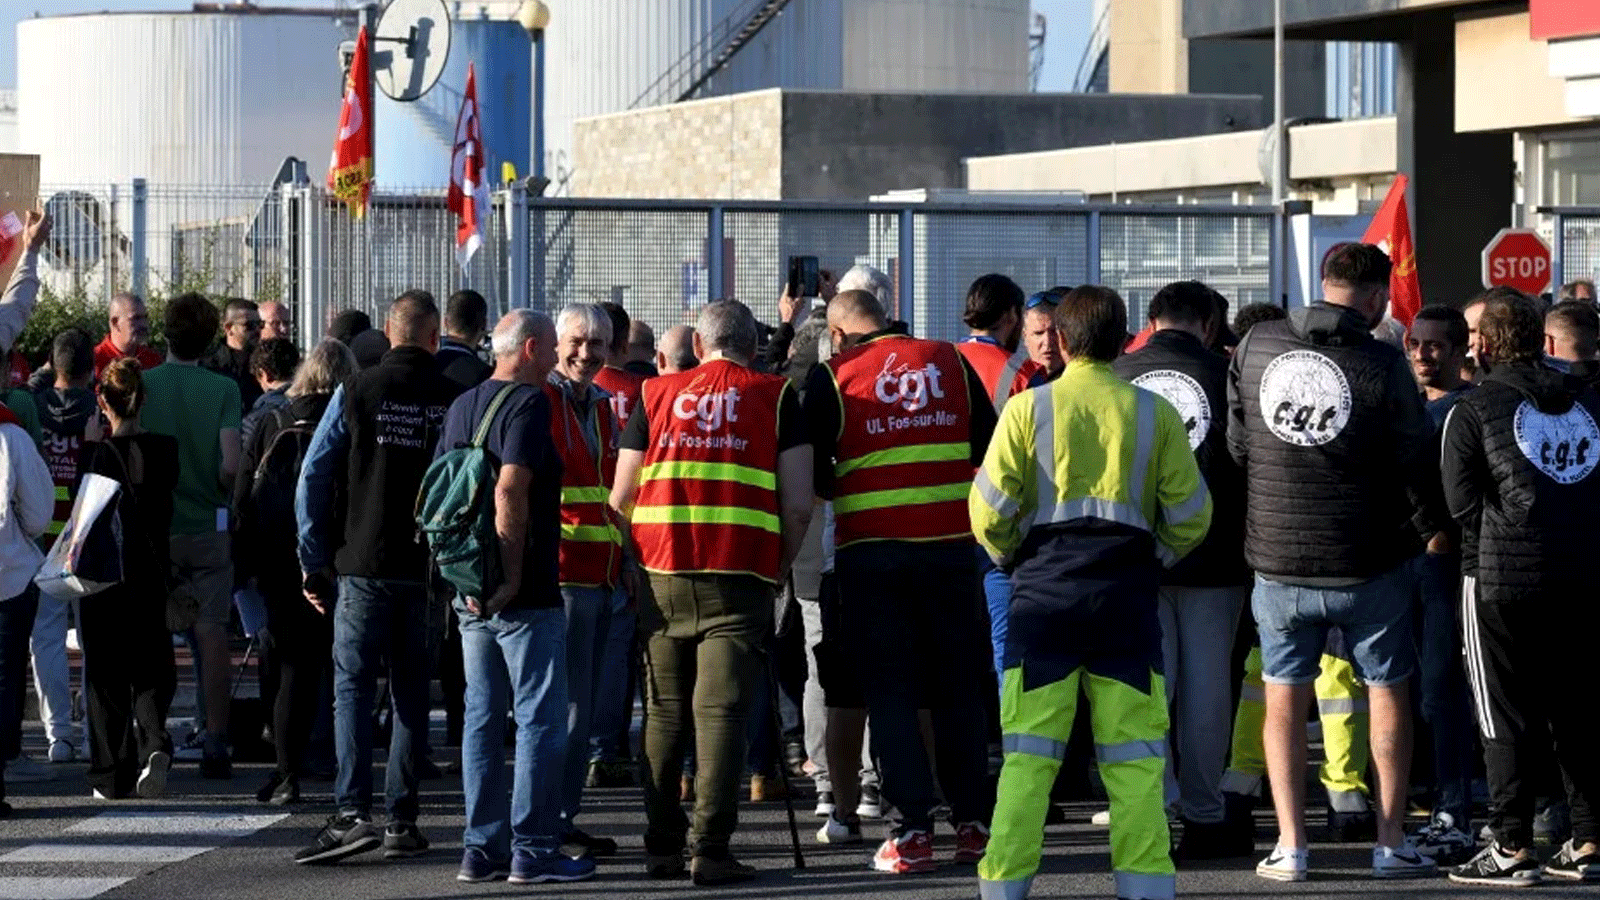 عمال ونقابيون مضربون من نقابة CGT يتجمعون خارج مصفاة النفط التابعة لشركة Esso في فوس سور مير ، جنوب فرنسا.